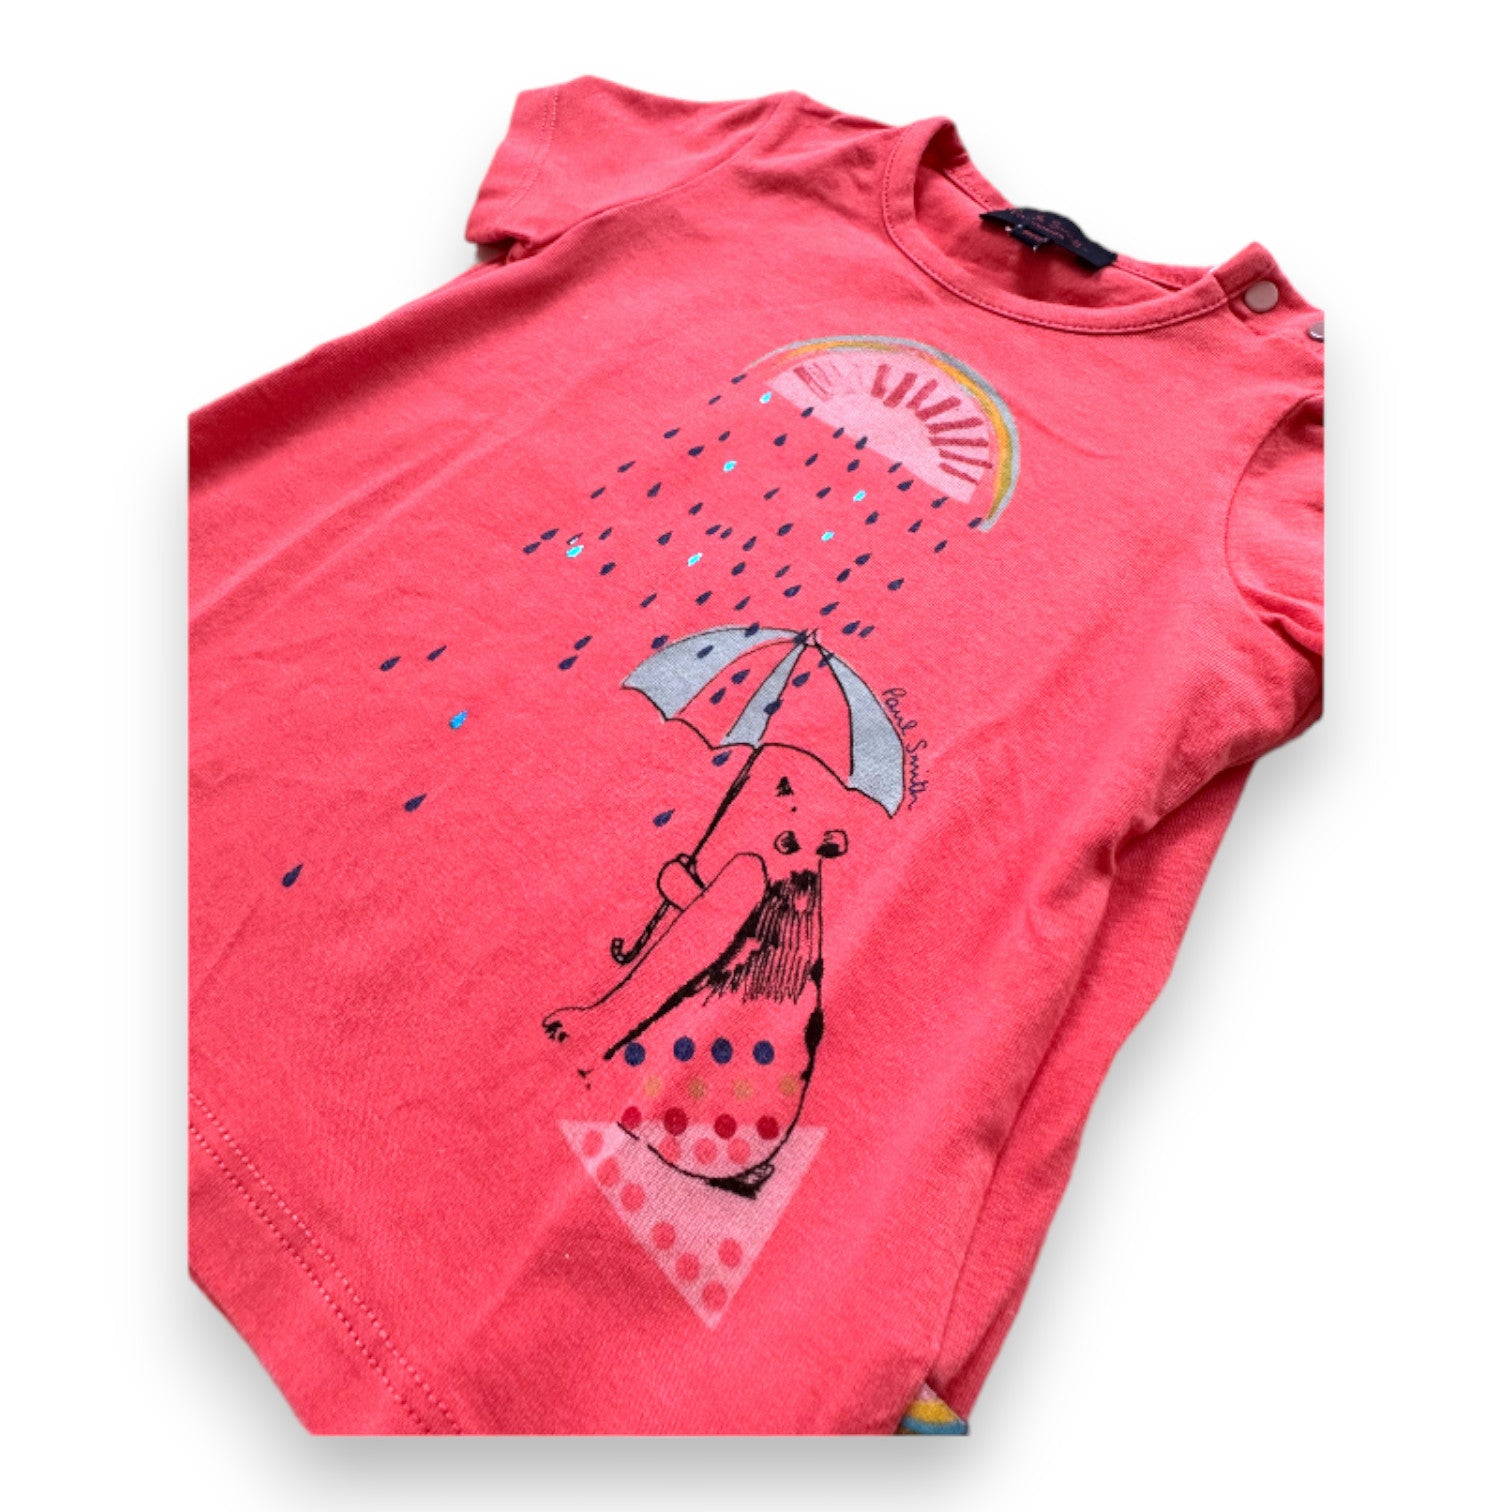 PAUL SMITH - T-shirt rose à manches courtes avec imprimés - 9 mois